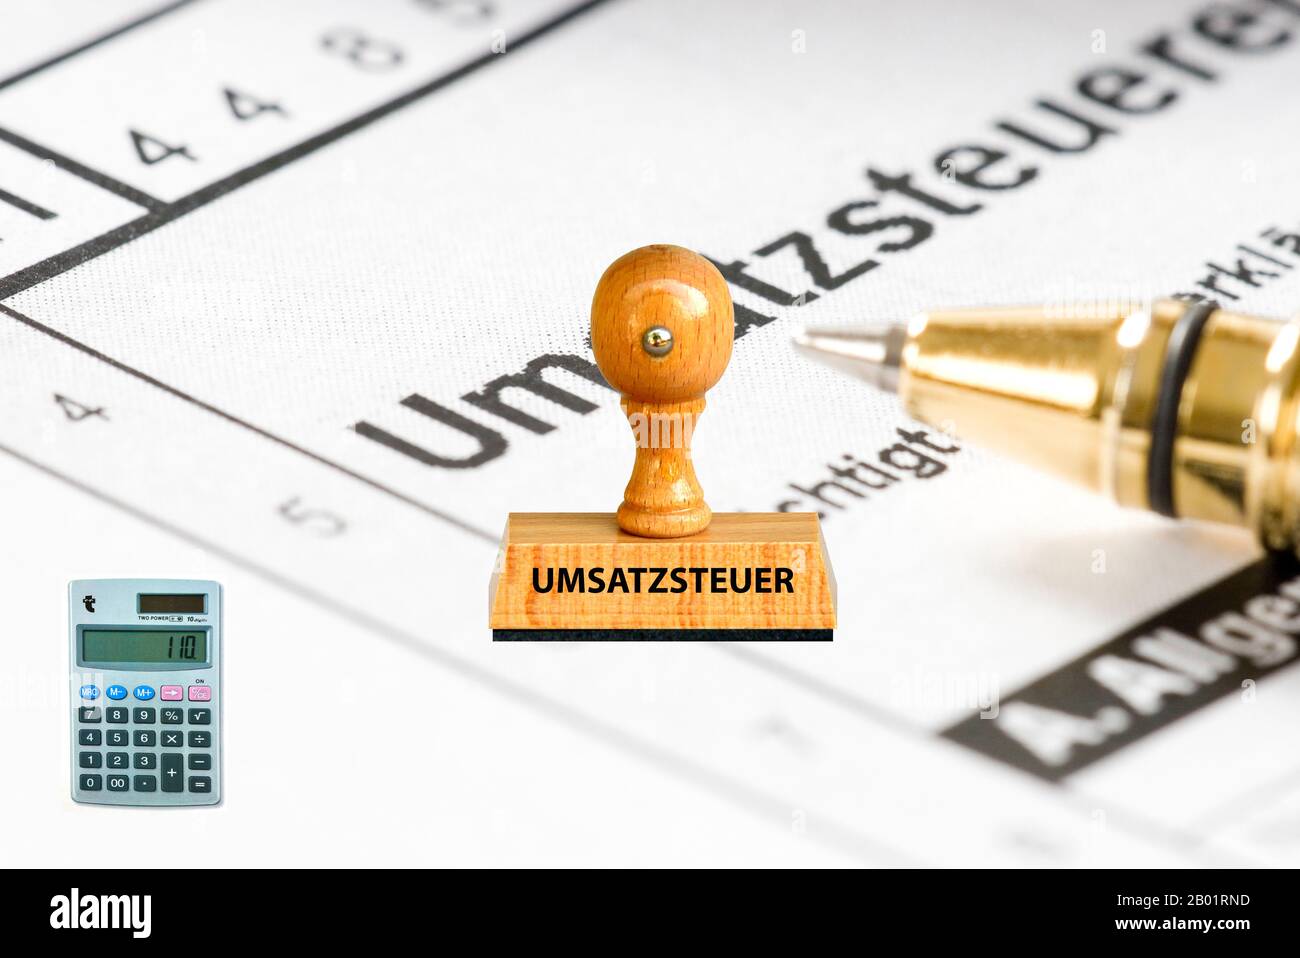 Inscripción de sellos Umsatzsteuer, impuestos añadidos, aplicación y cálculo en el fondo, Alemania Foto de stock